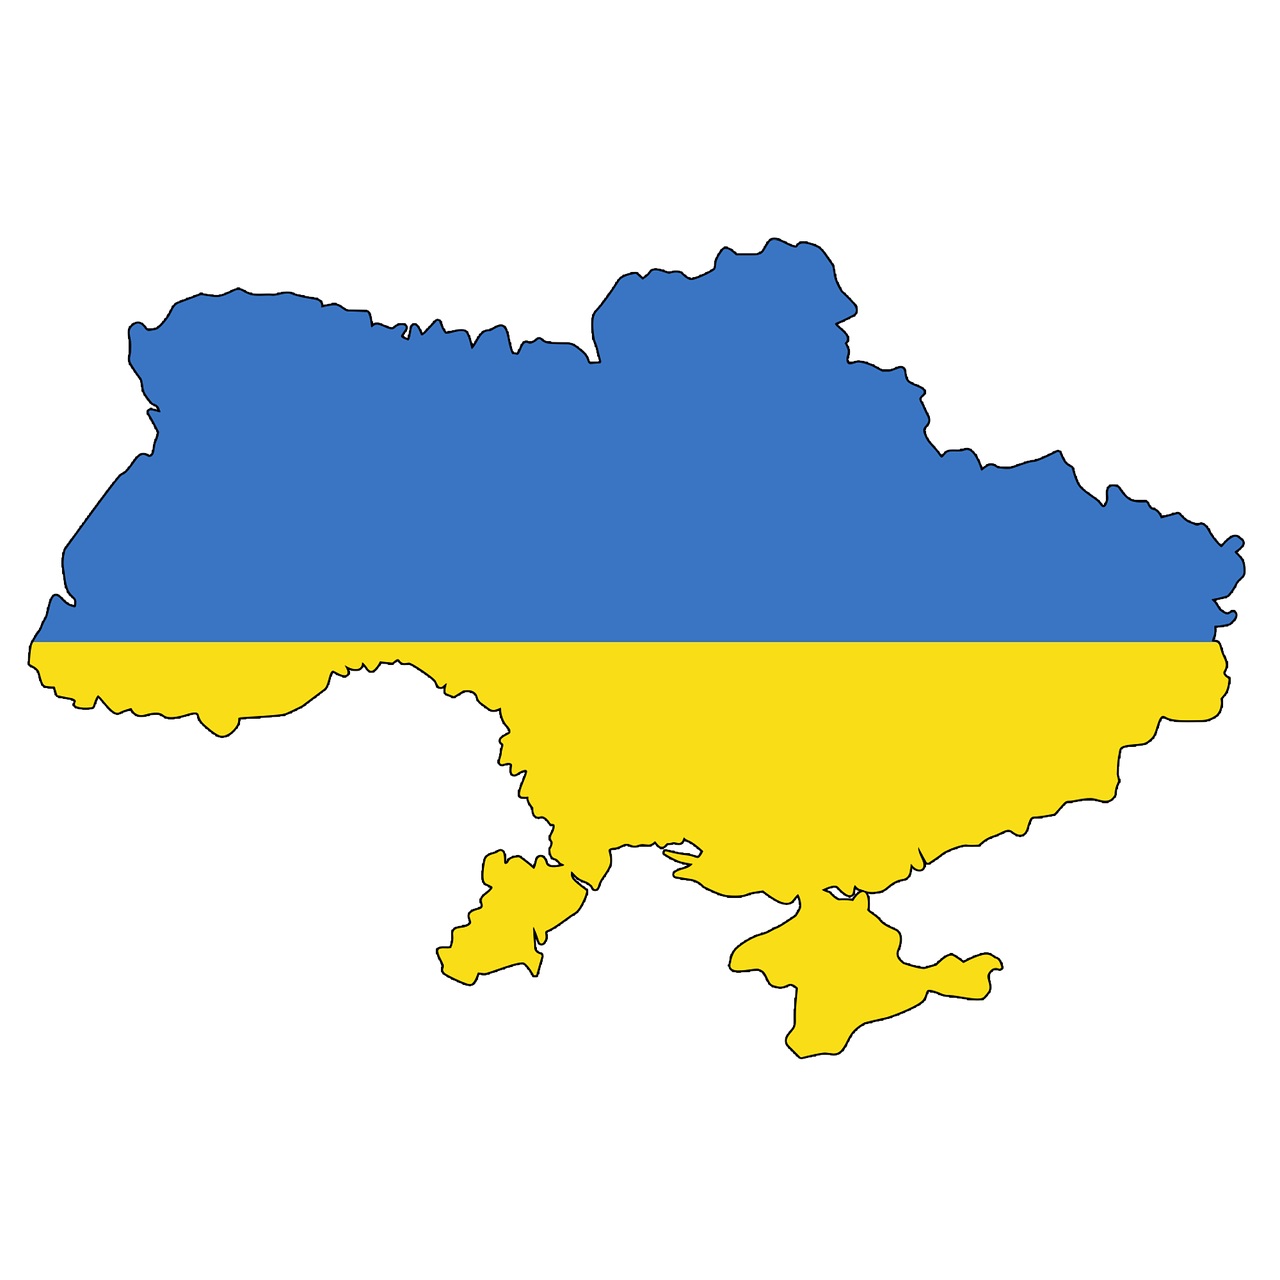 Die Umrisse der Ukraine in den Nationalfarben des Landes blau und gelb. © Elionas/pixabay